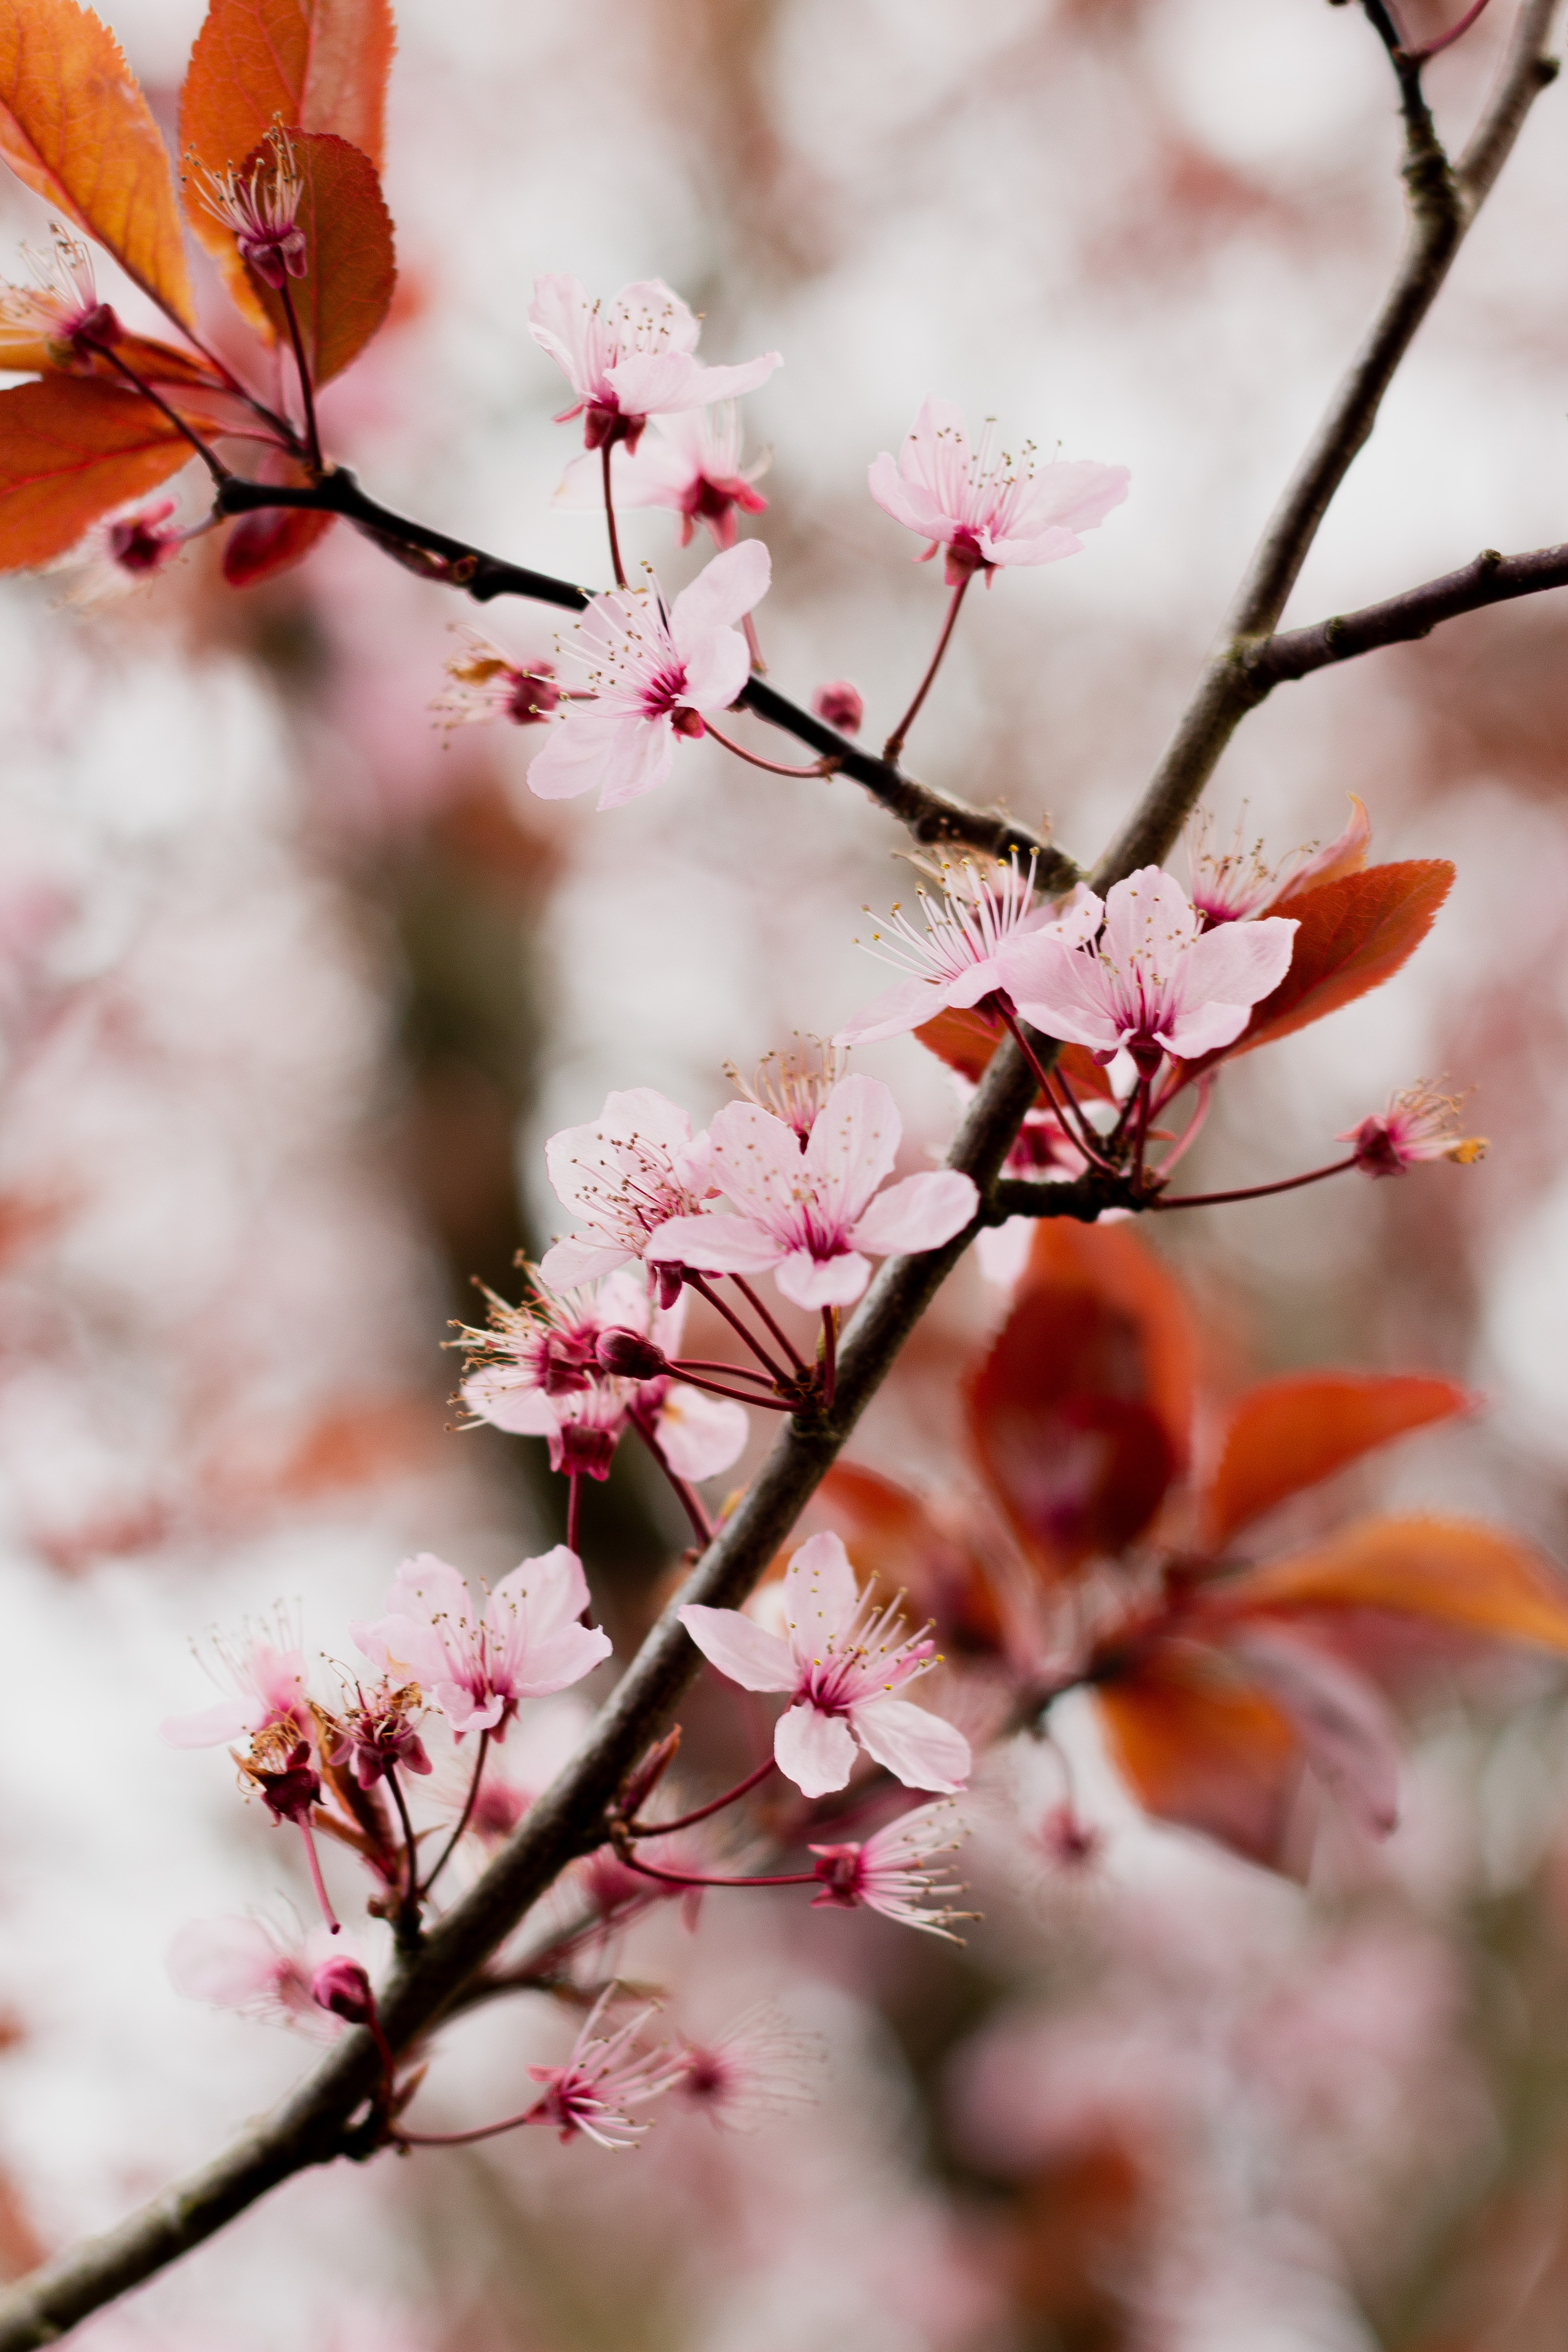 8k Cherry Blossom Images